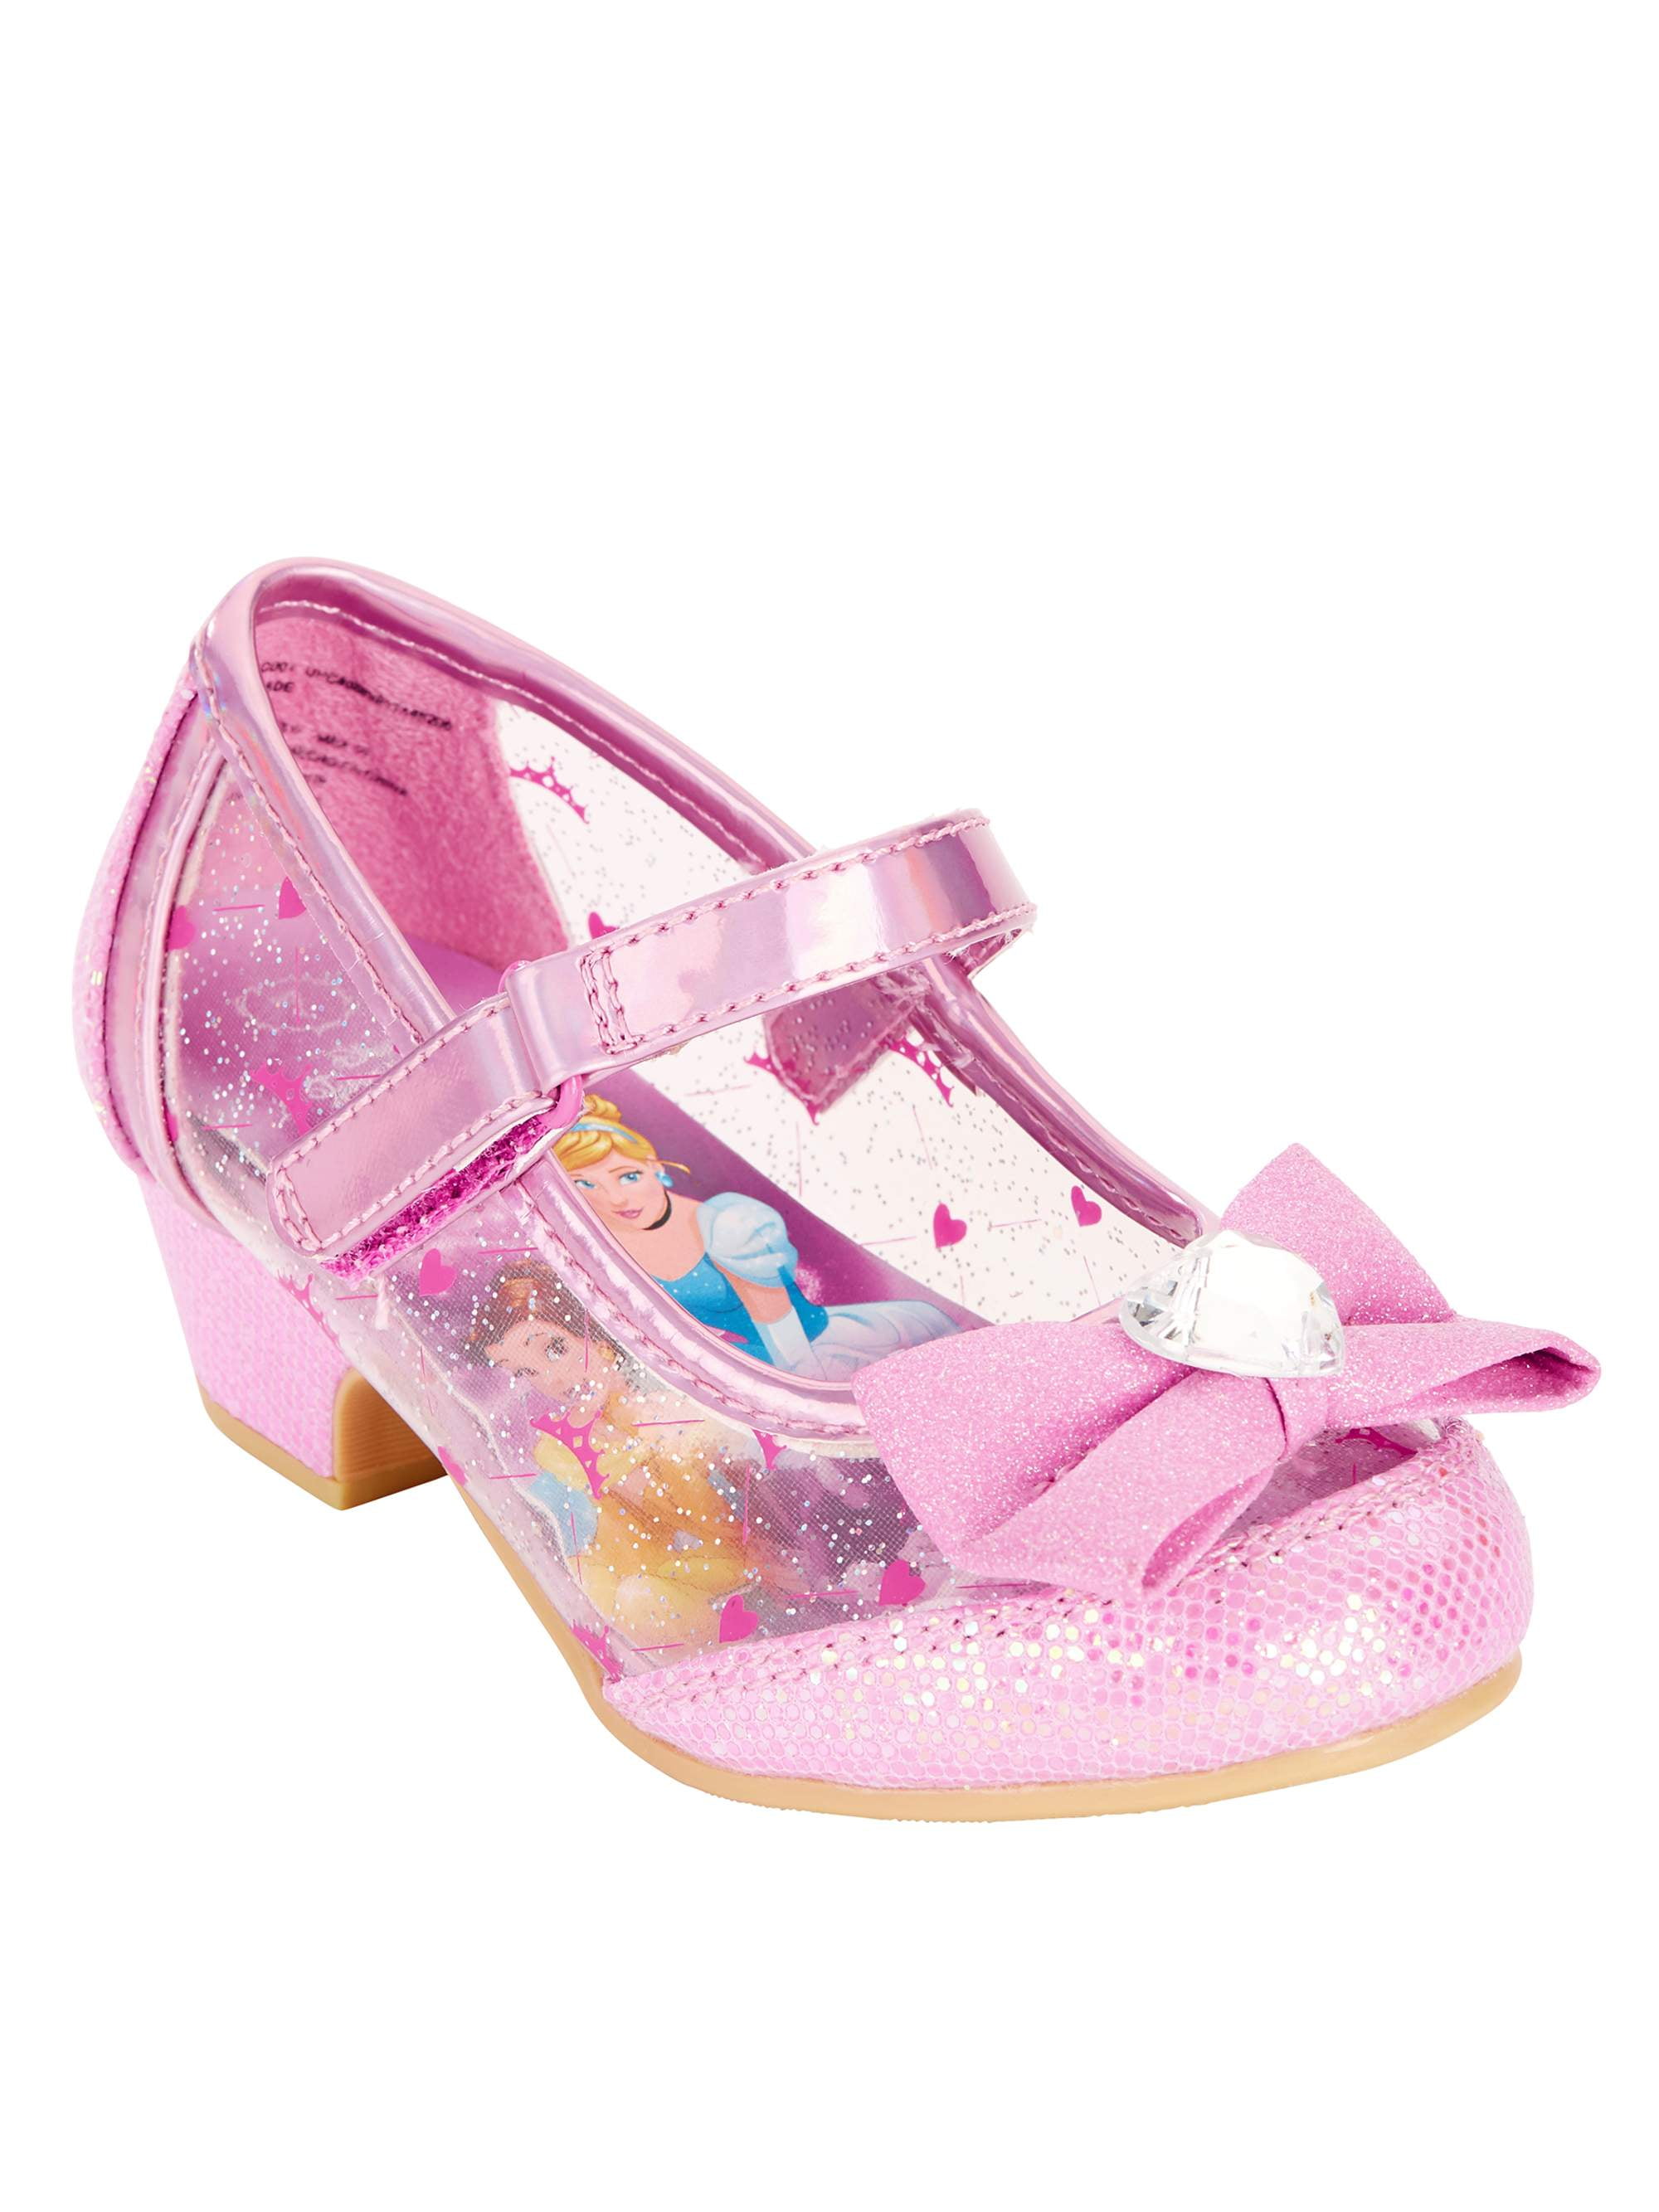 little girls pink dress shoes